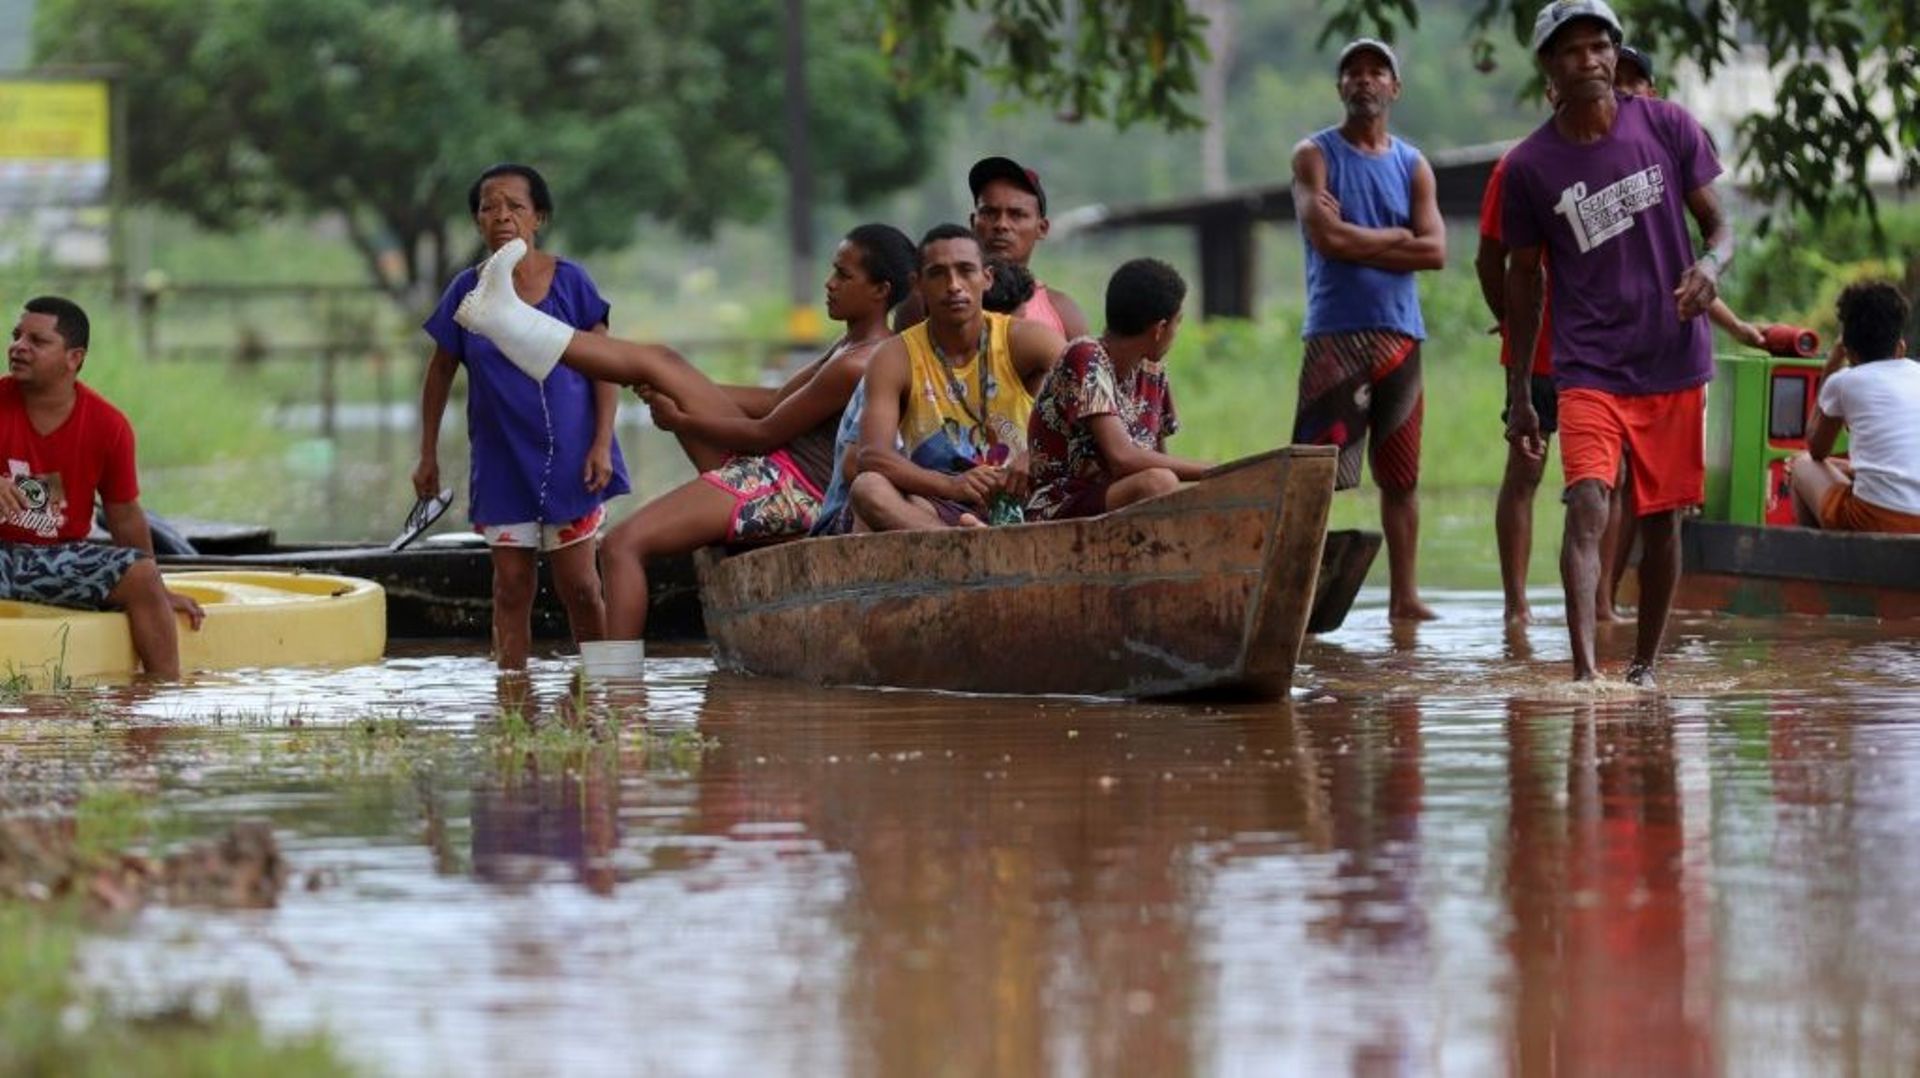 Des habitants utilisent une barque pour traverser un zone inondée dans le quartier Joaia do Atlantico, à Ilheus, dans le sud de l'Etat  brésilien de Bahia